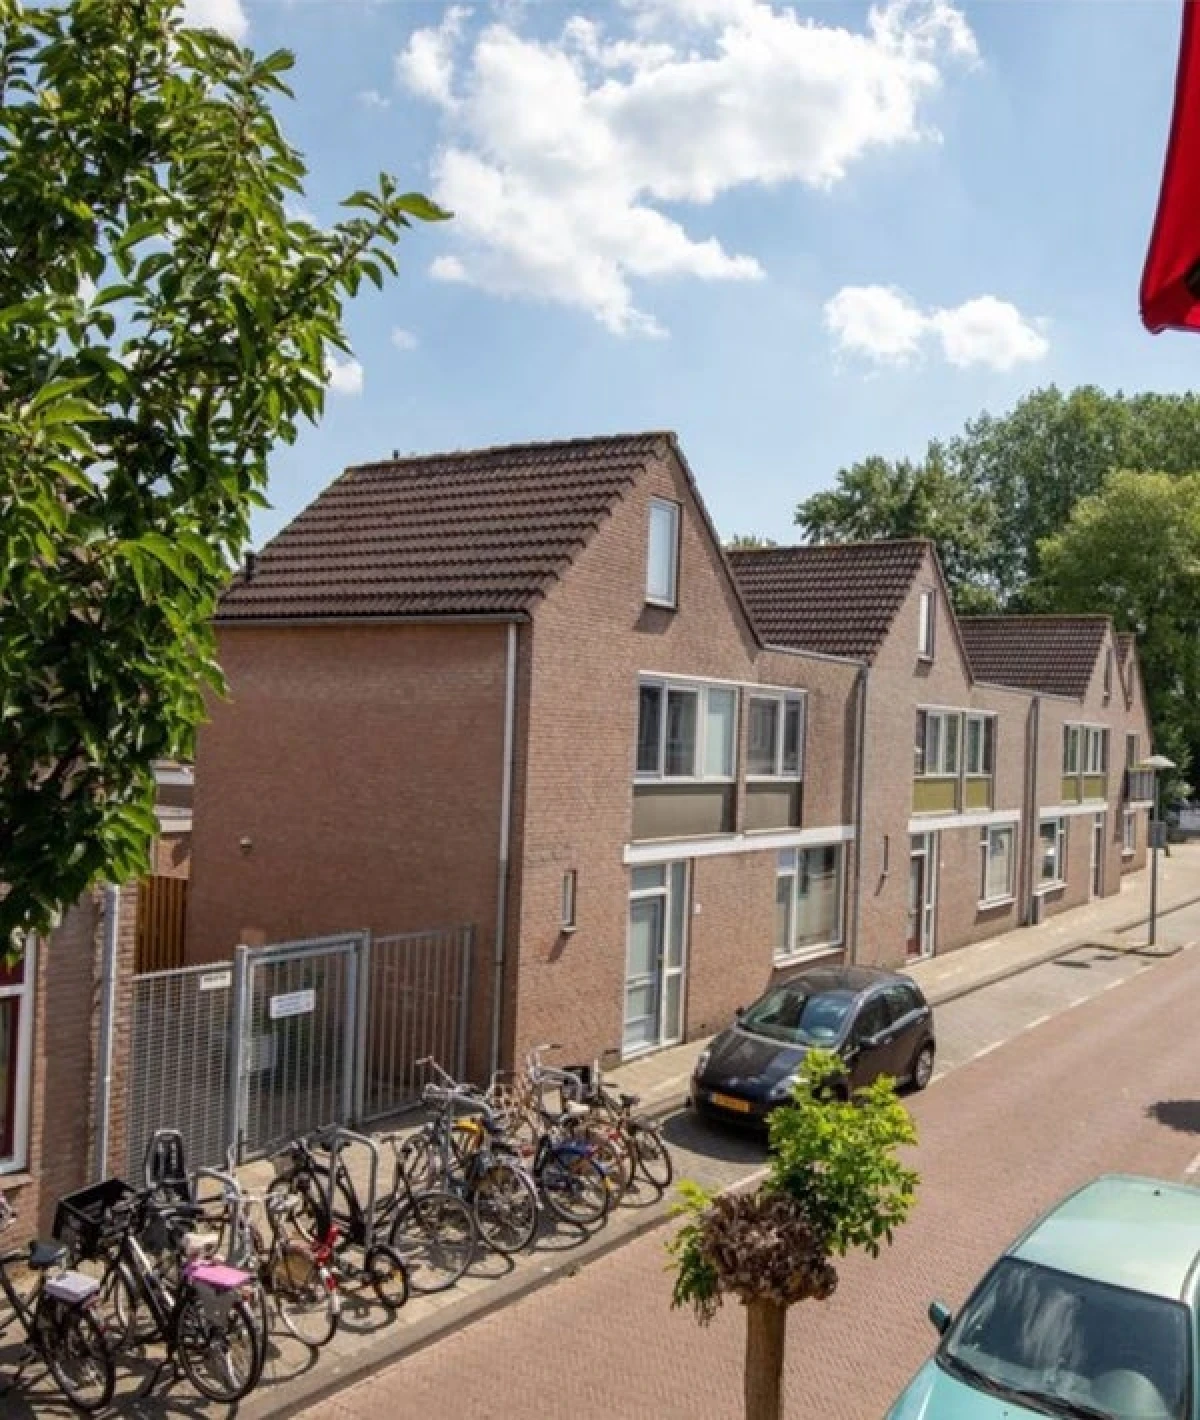 Veldstraat 10, Utrecht